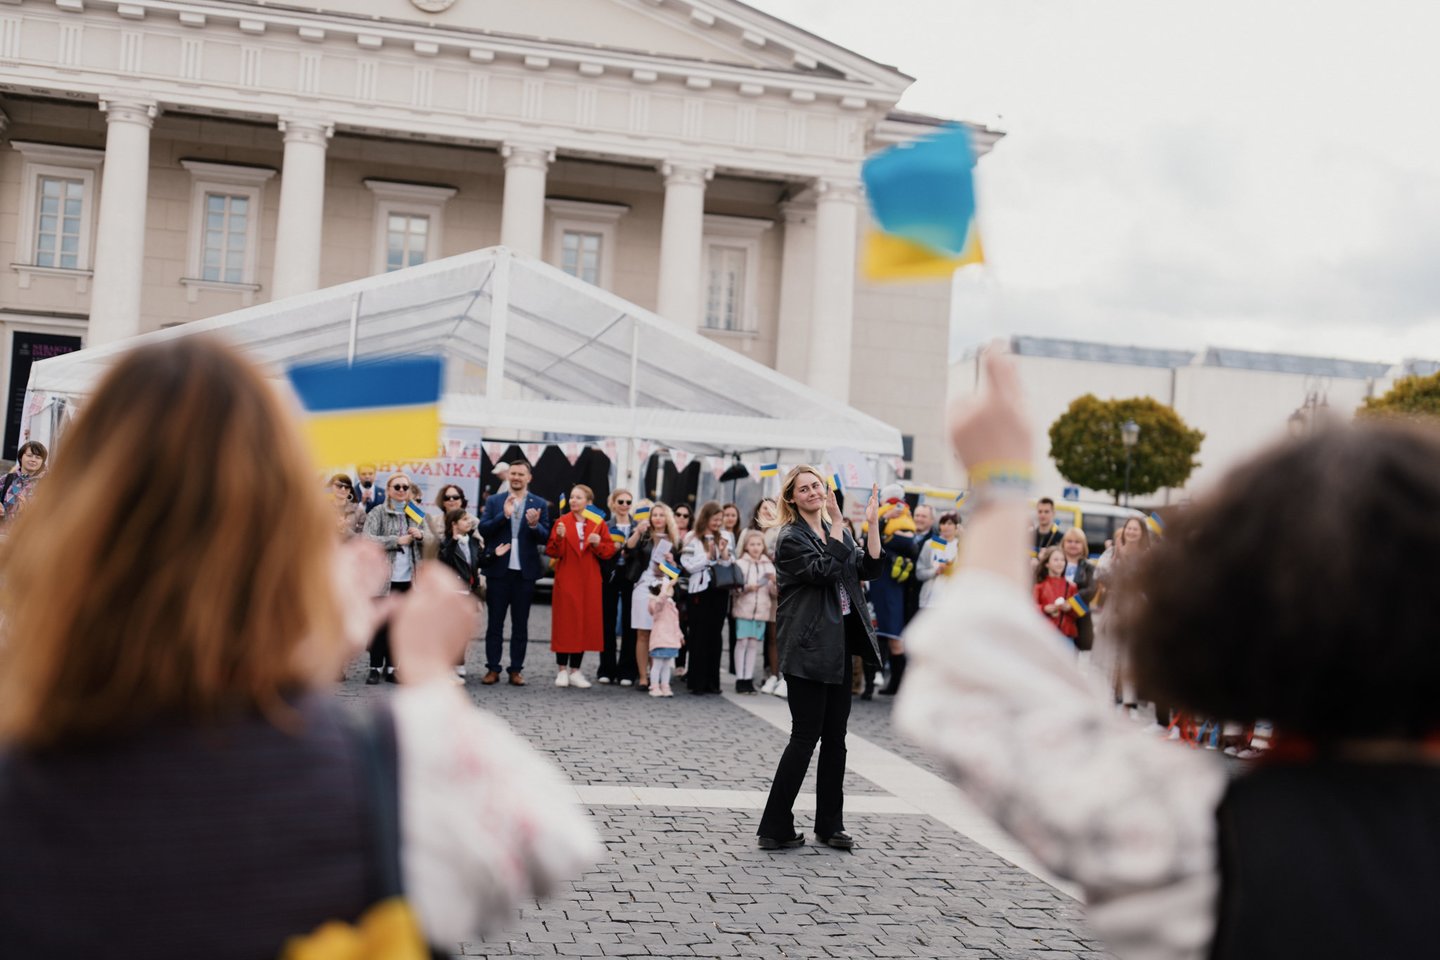 Vilniuje penktadienį prasidedantis festivalis „Vilniushyvanka“ pakvies į daugiau nei 130 įvairių renginių ir veiklų, skirtų pristatyti šiuo metu karą išgyvenančios Ukrainos kultūrai ir tradicijoms, patiems karo pabėgėliams.<br>Justino Auškelio, Katažynos Polubinskos nuotr.